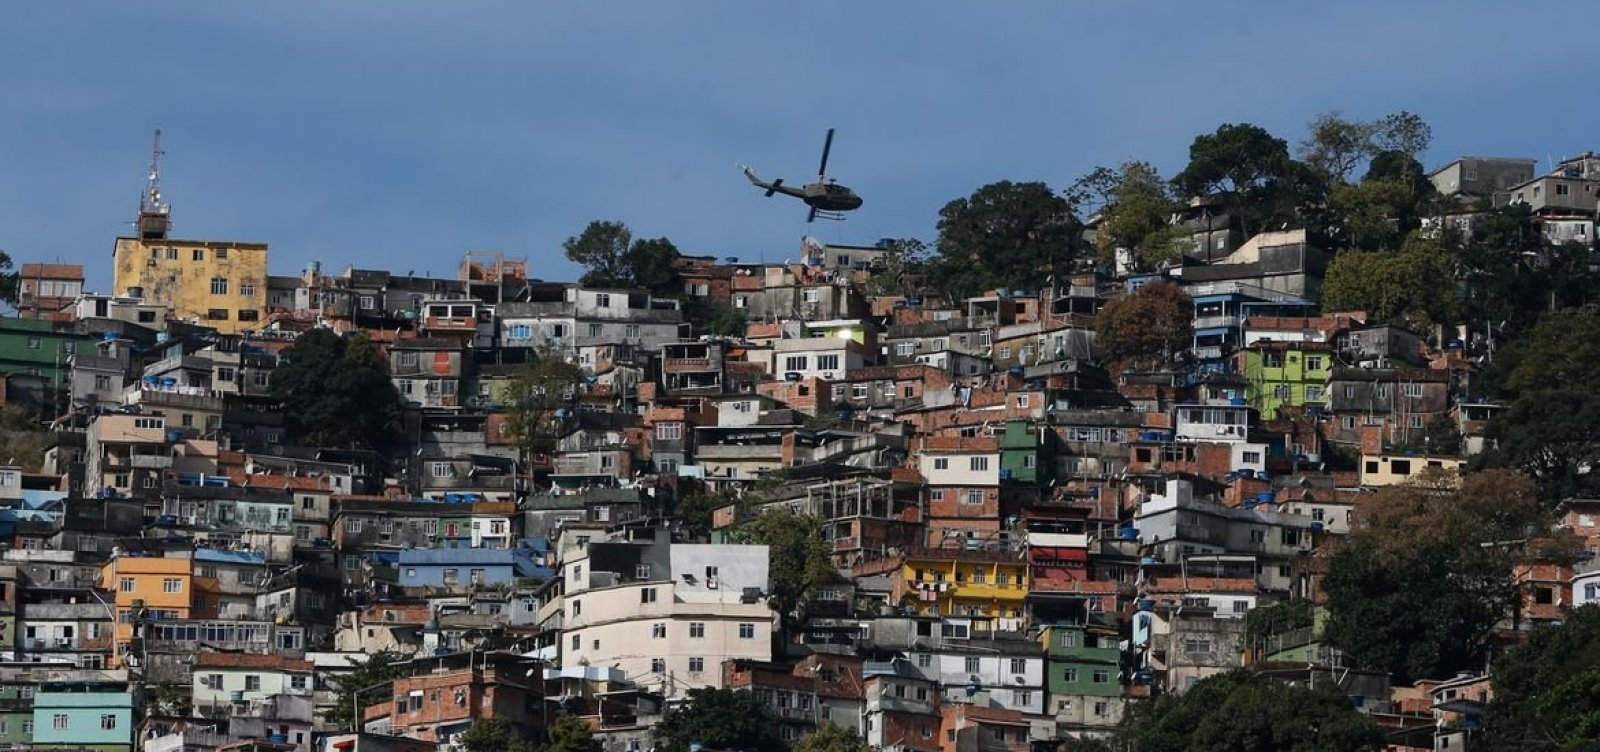 Milícia controla 57% da área do Rio de Janeiro, diz estudo